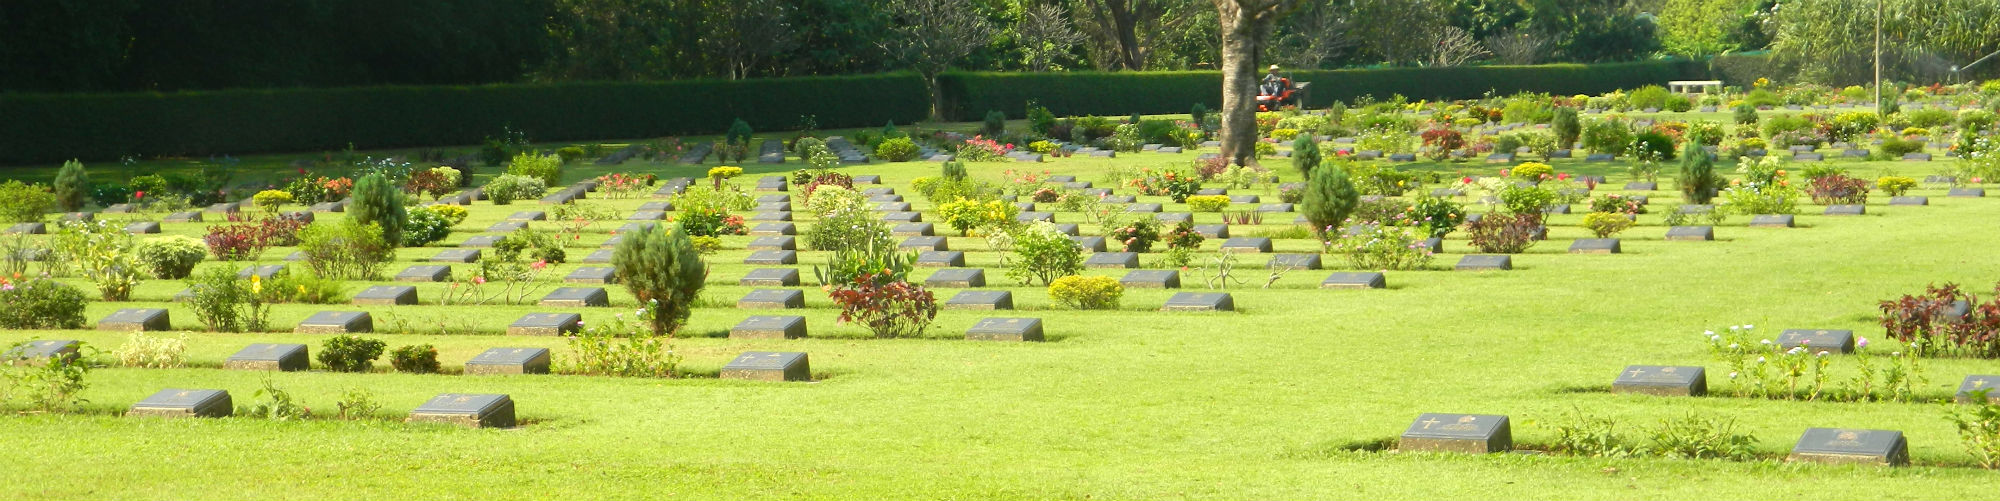 Chunkai War Cemetery, Kanchanaburi